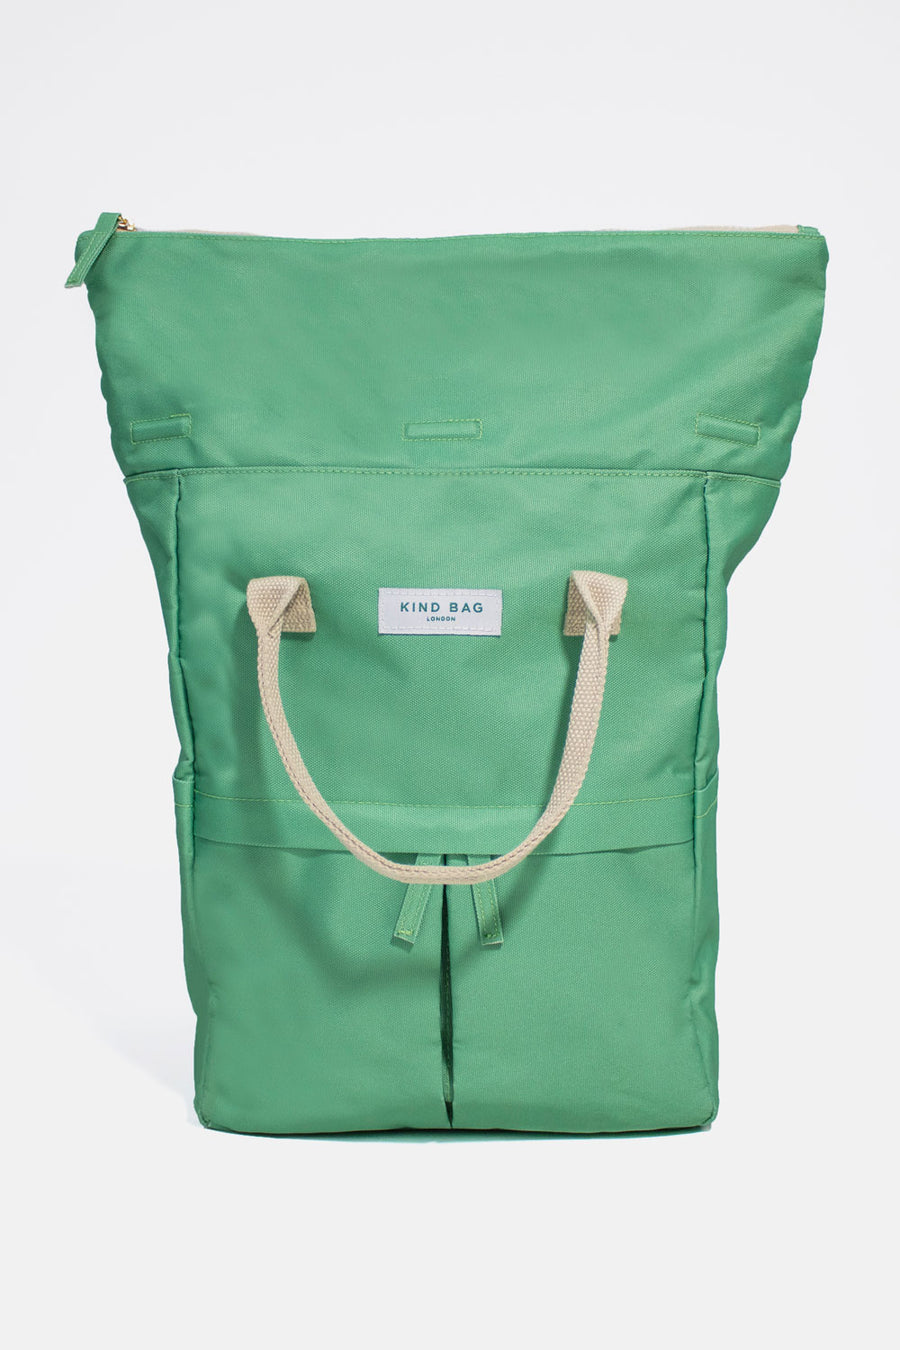 Mint Green | “Hackney” 2.0 Backpack | Medium